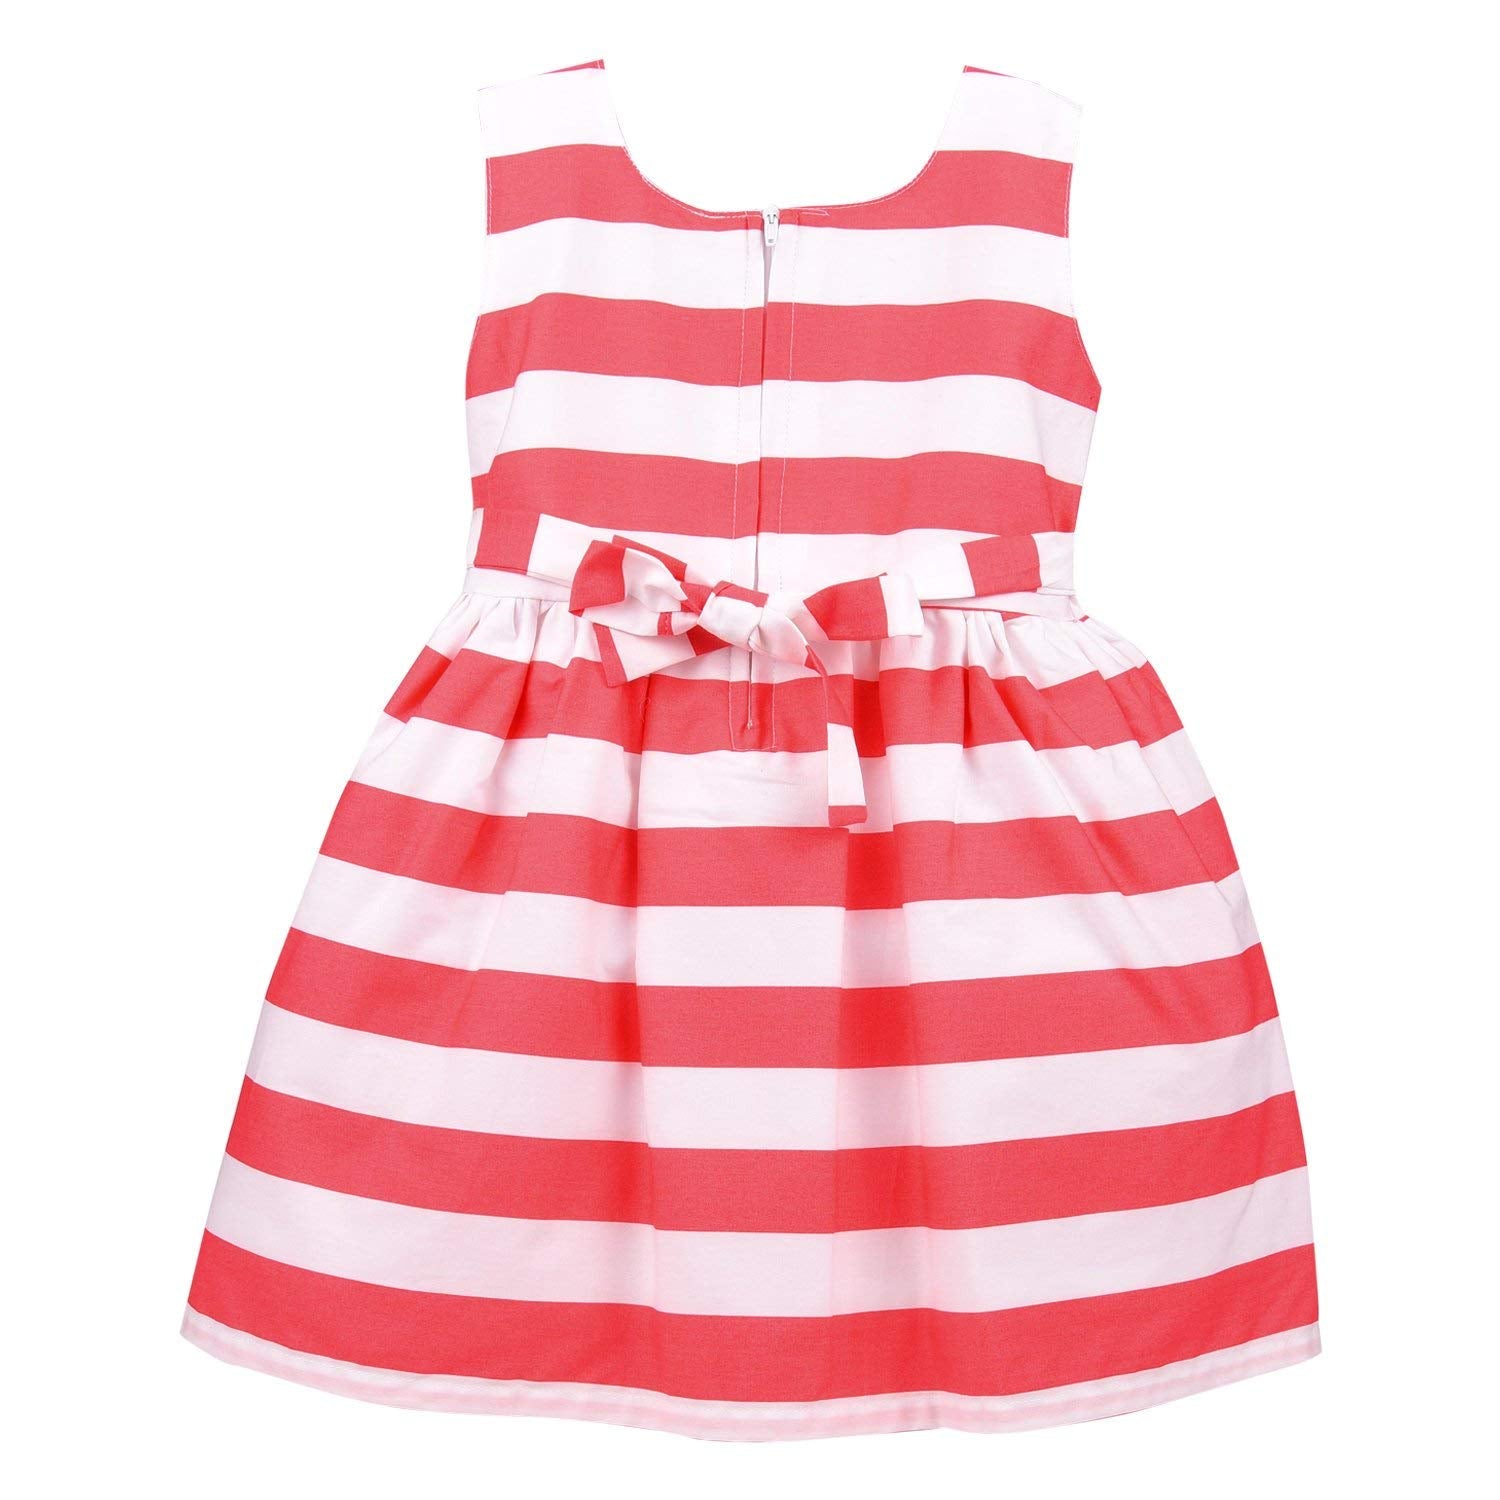 Baby Girls Party wear Frock Dress ctn265tm - Wish Karo Cotton Wear - frocks Cotton Wear - baby dress